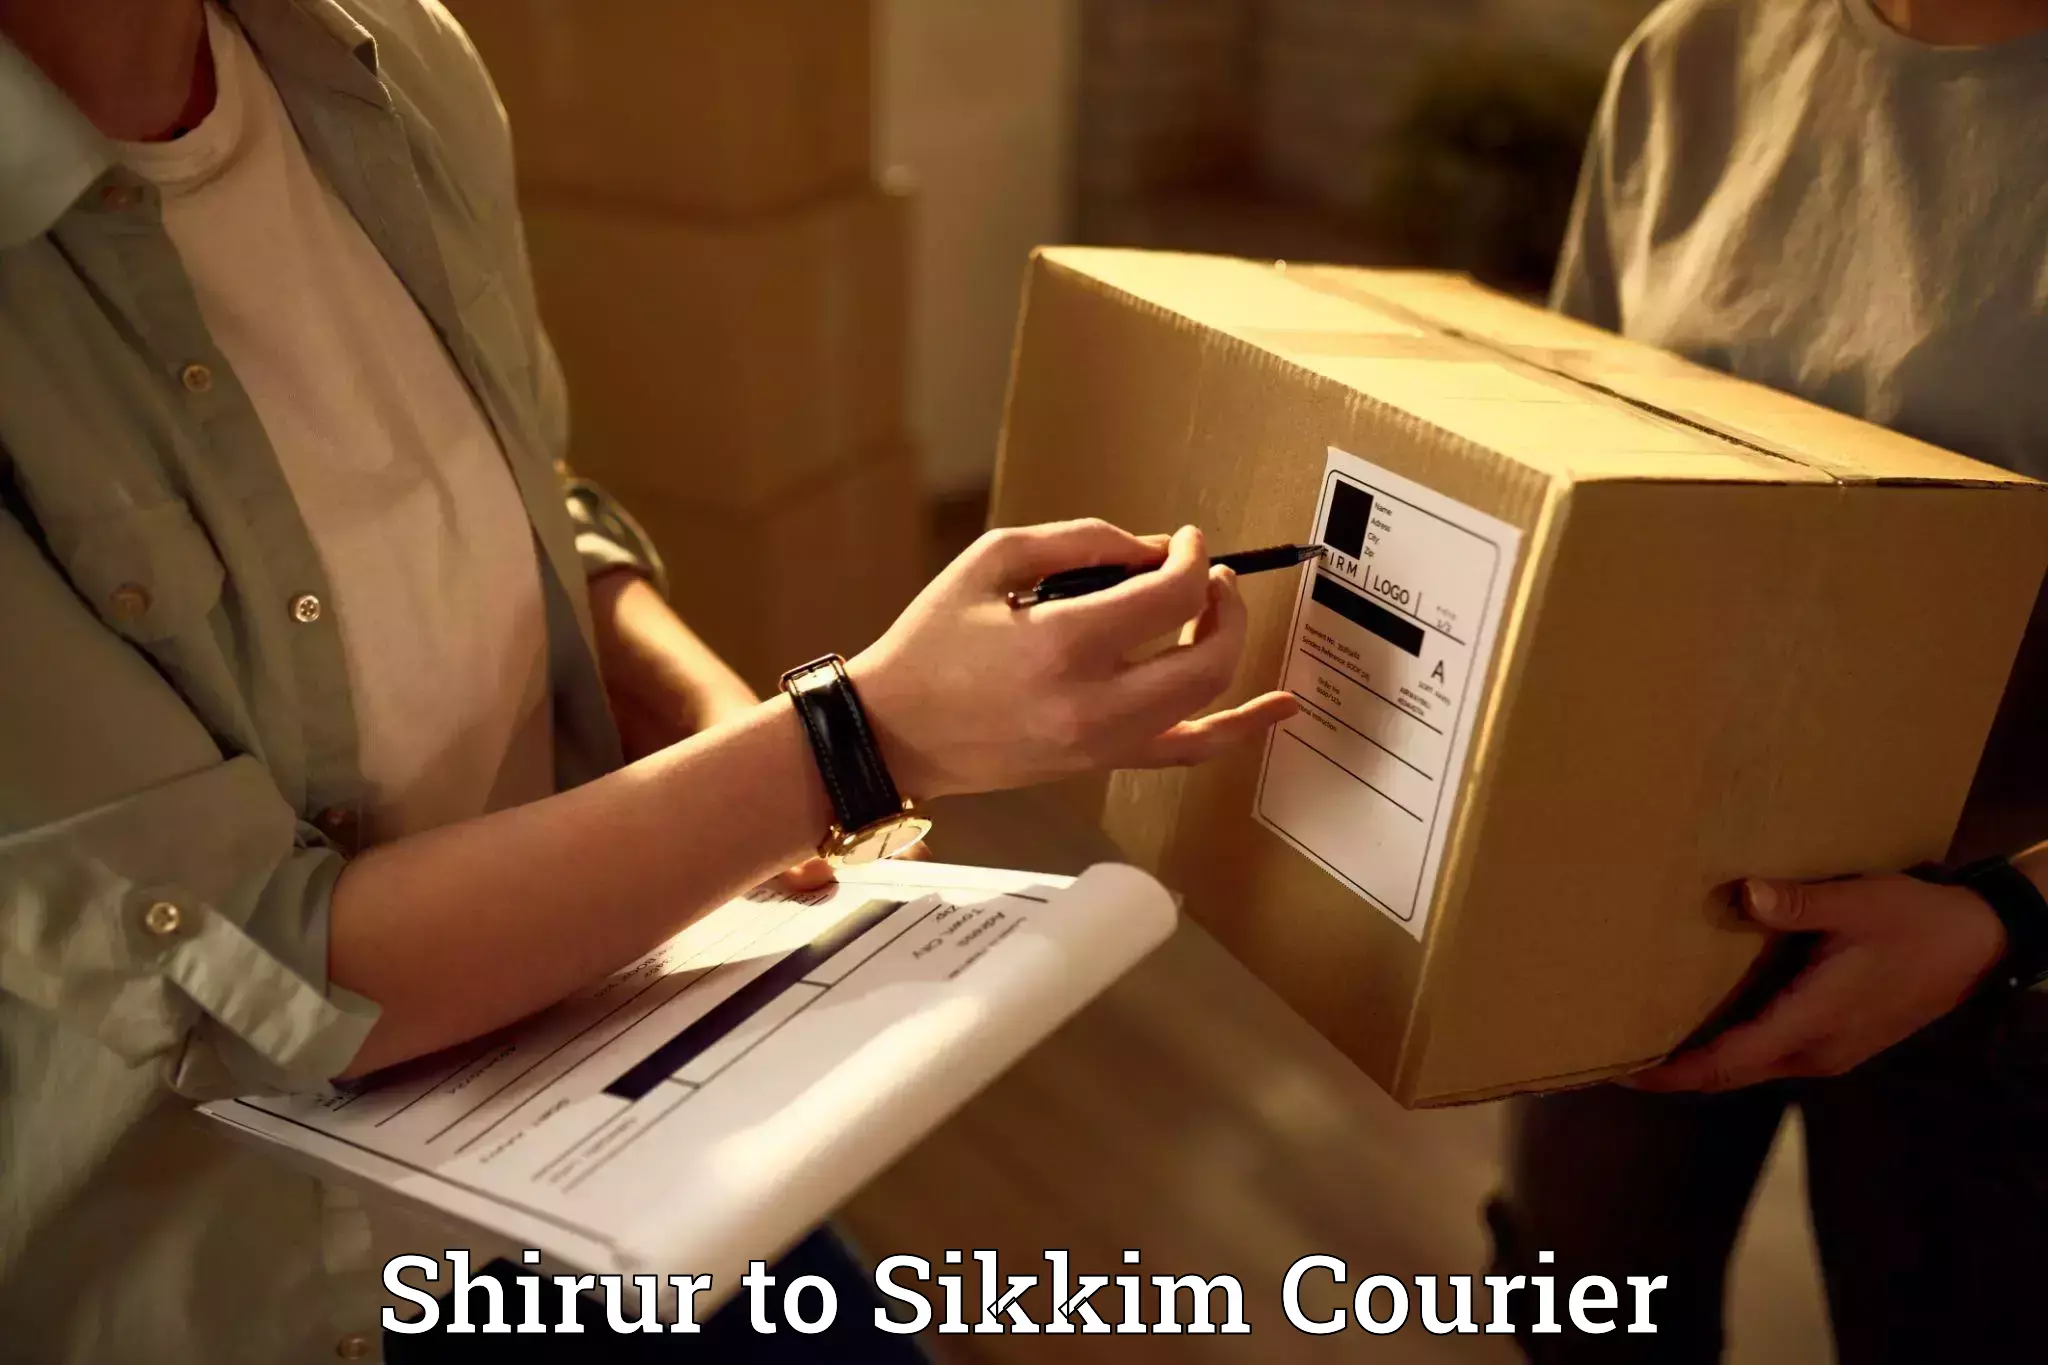 Furniture transport professionals Shirur to Pelling